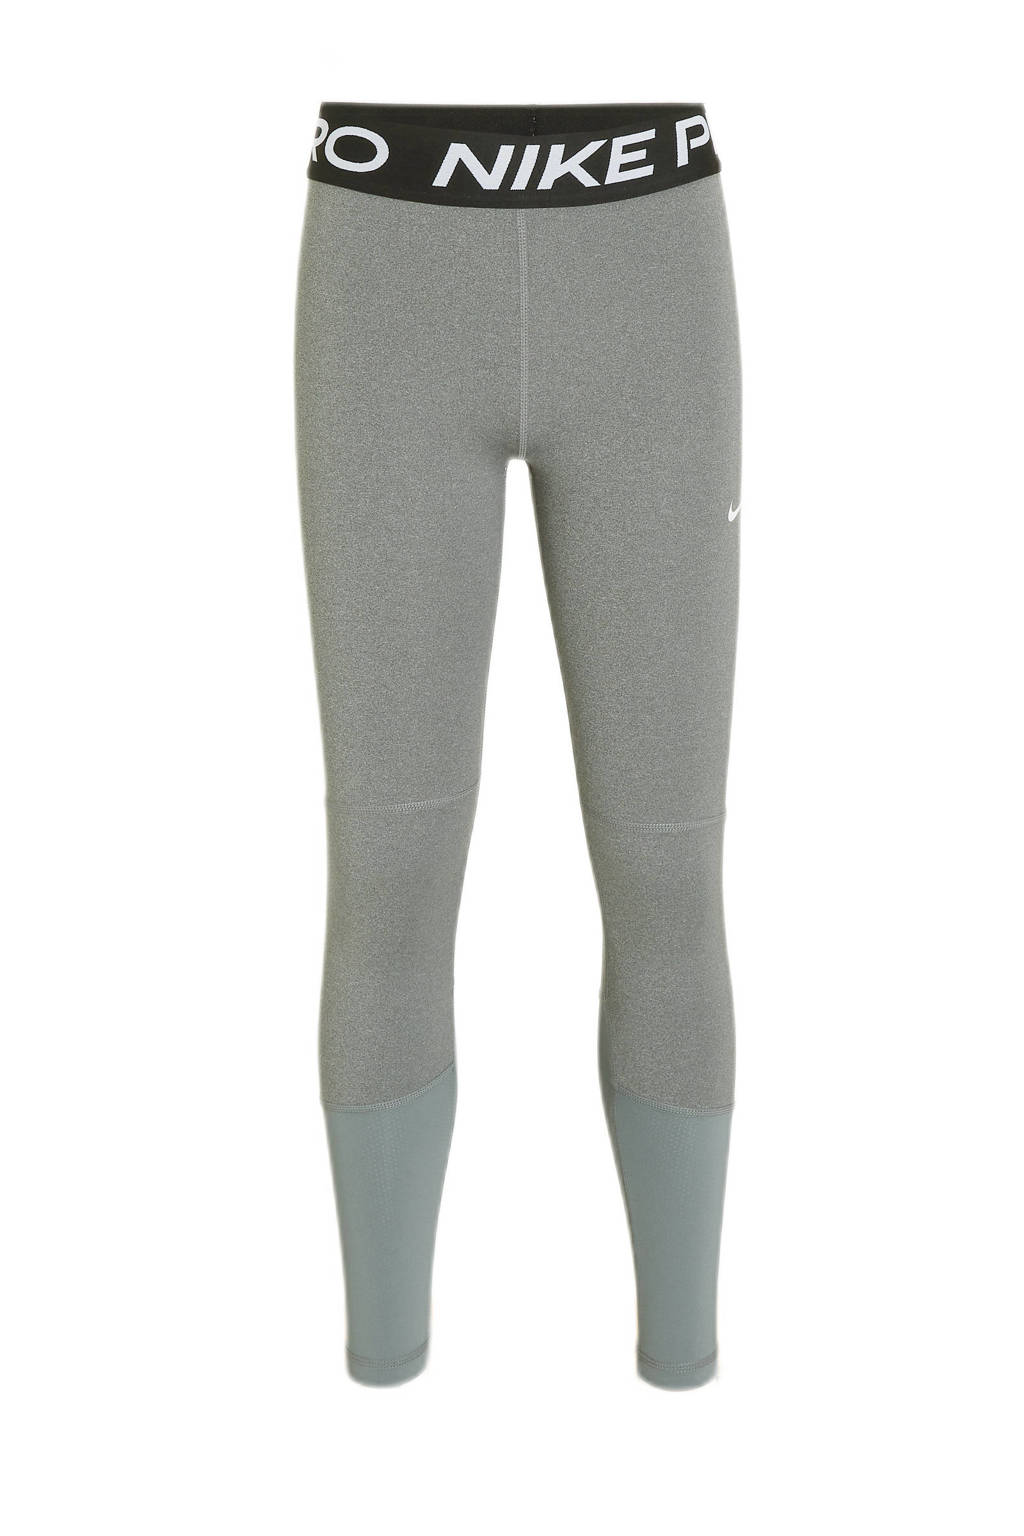 Nike slim fit broek met logo grijs, Grijs